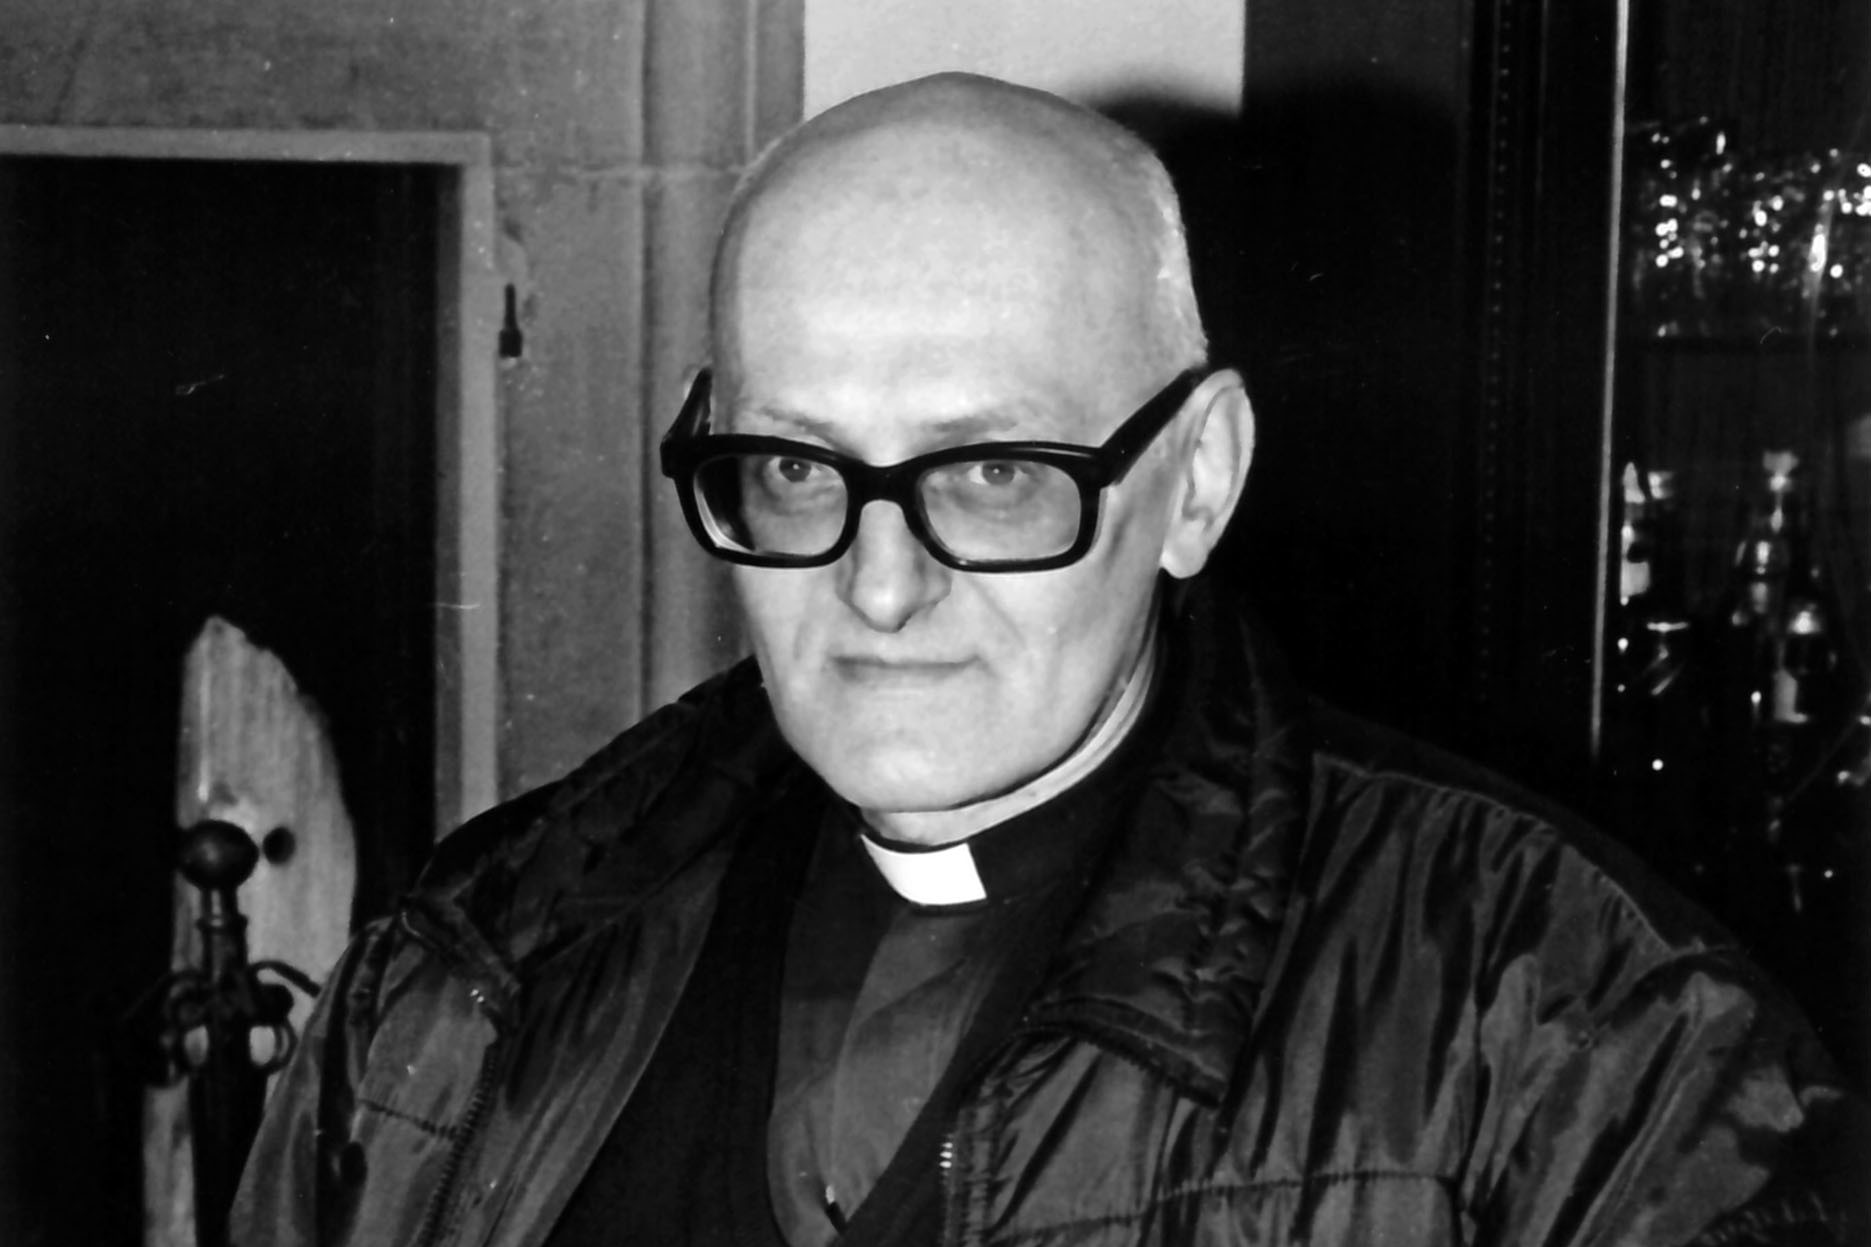 Morto a Bergamo l’ex parroco di Vaiano Don Mario Donadoni